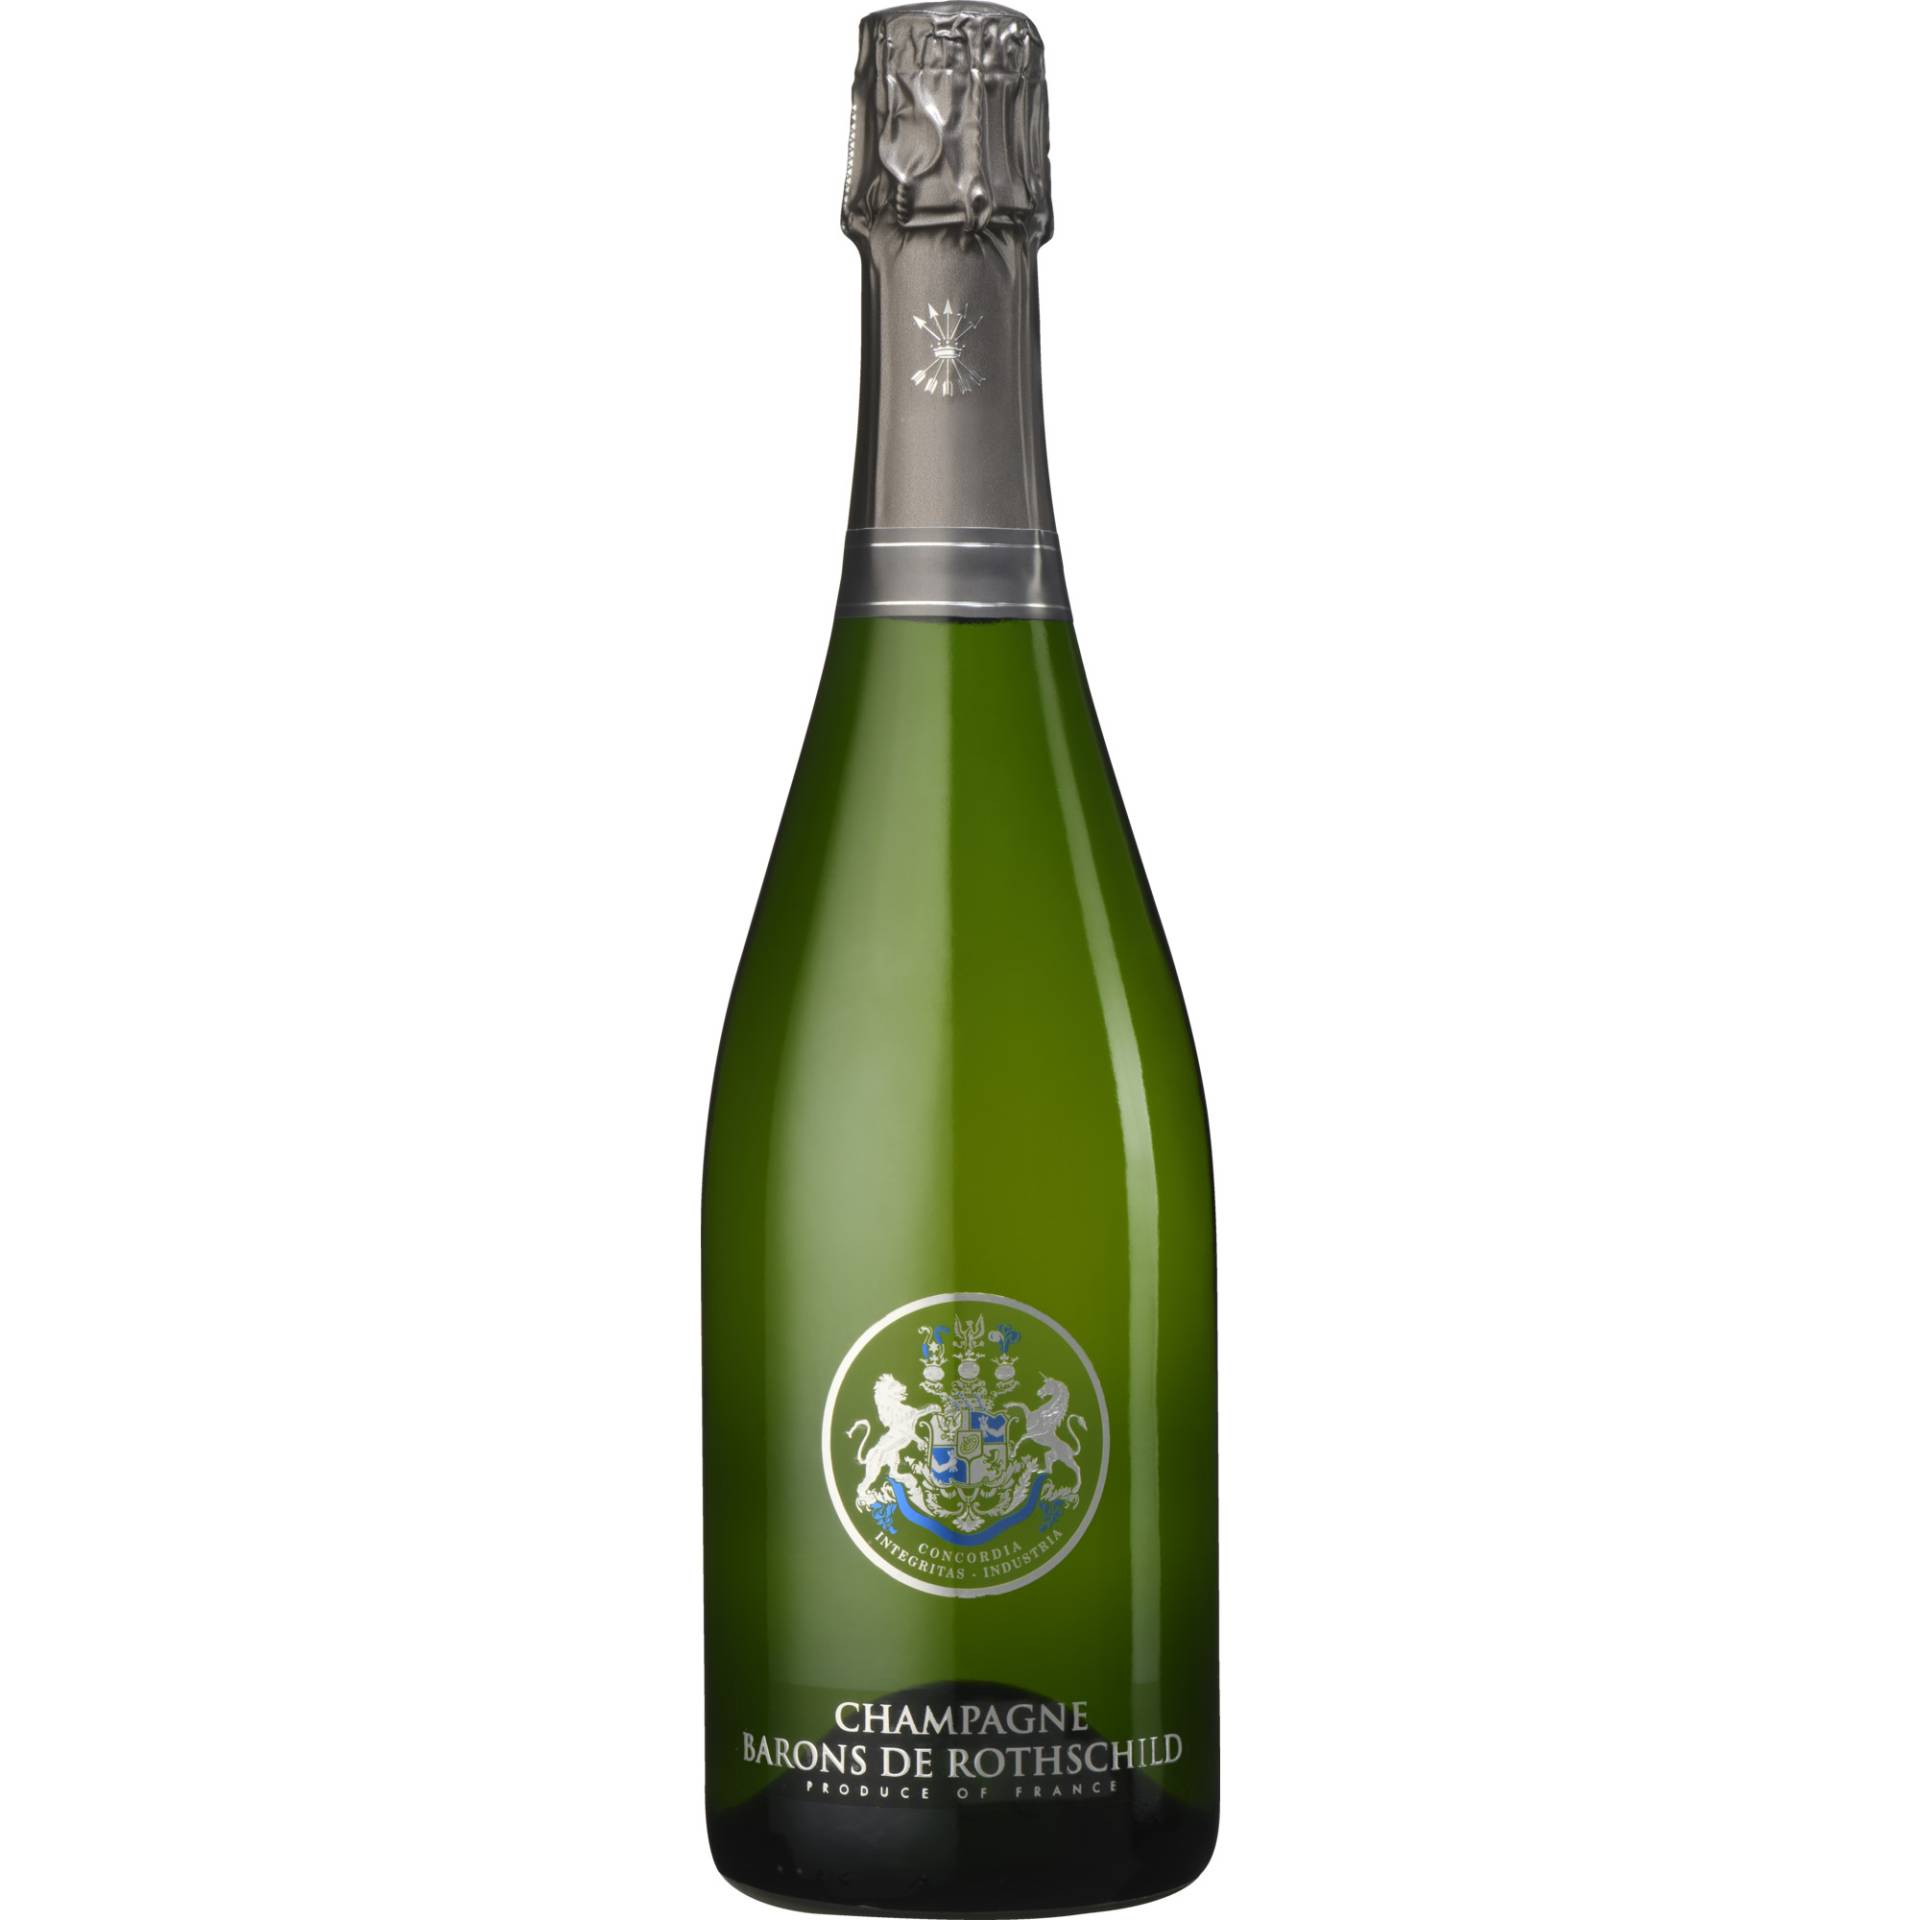 Champagne Barons de Rothschild Millésime, Brut, Champagne AC, Champagne, 2014, Schaumwein von Société Champenoise des Barons et Associés SAS, 51100 Reims, France